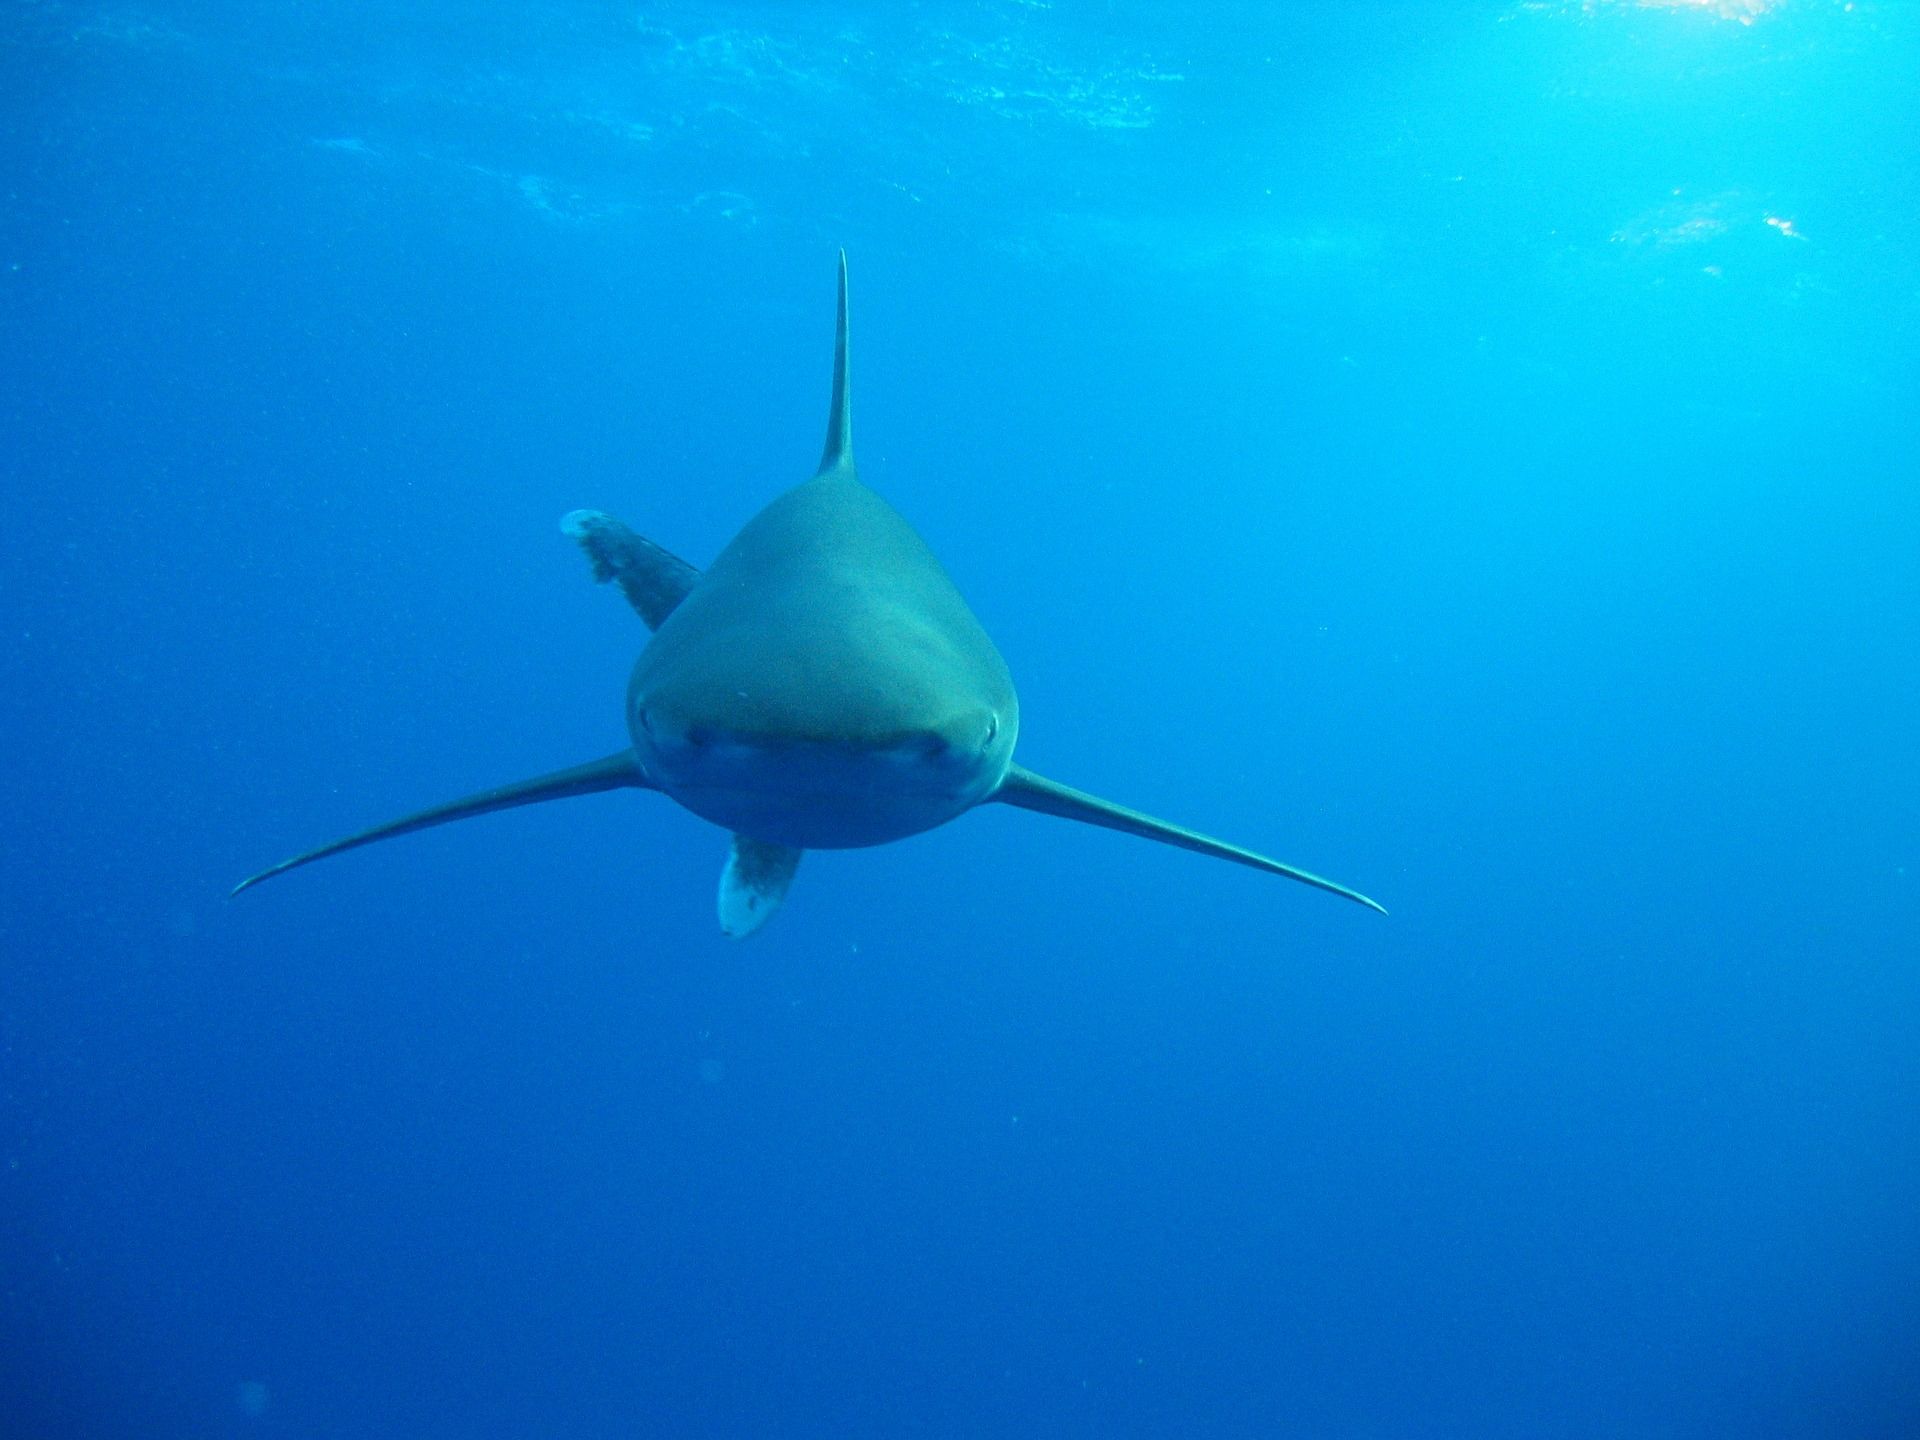 Haie im Roten Meer: Mit einem beherzten Schlag auf die Schnauze des Hais lassen sich die Raubfische in der Regel vertreiben. Foto: Pixabay